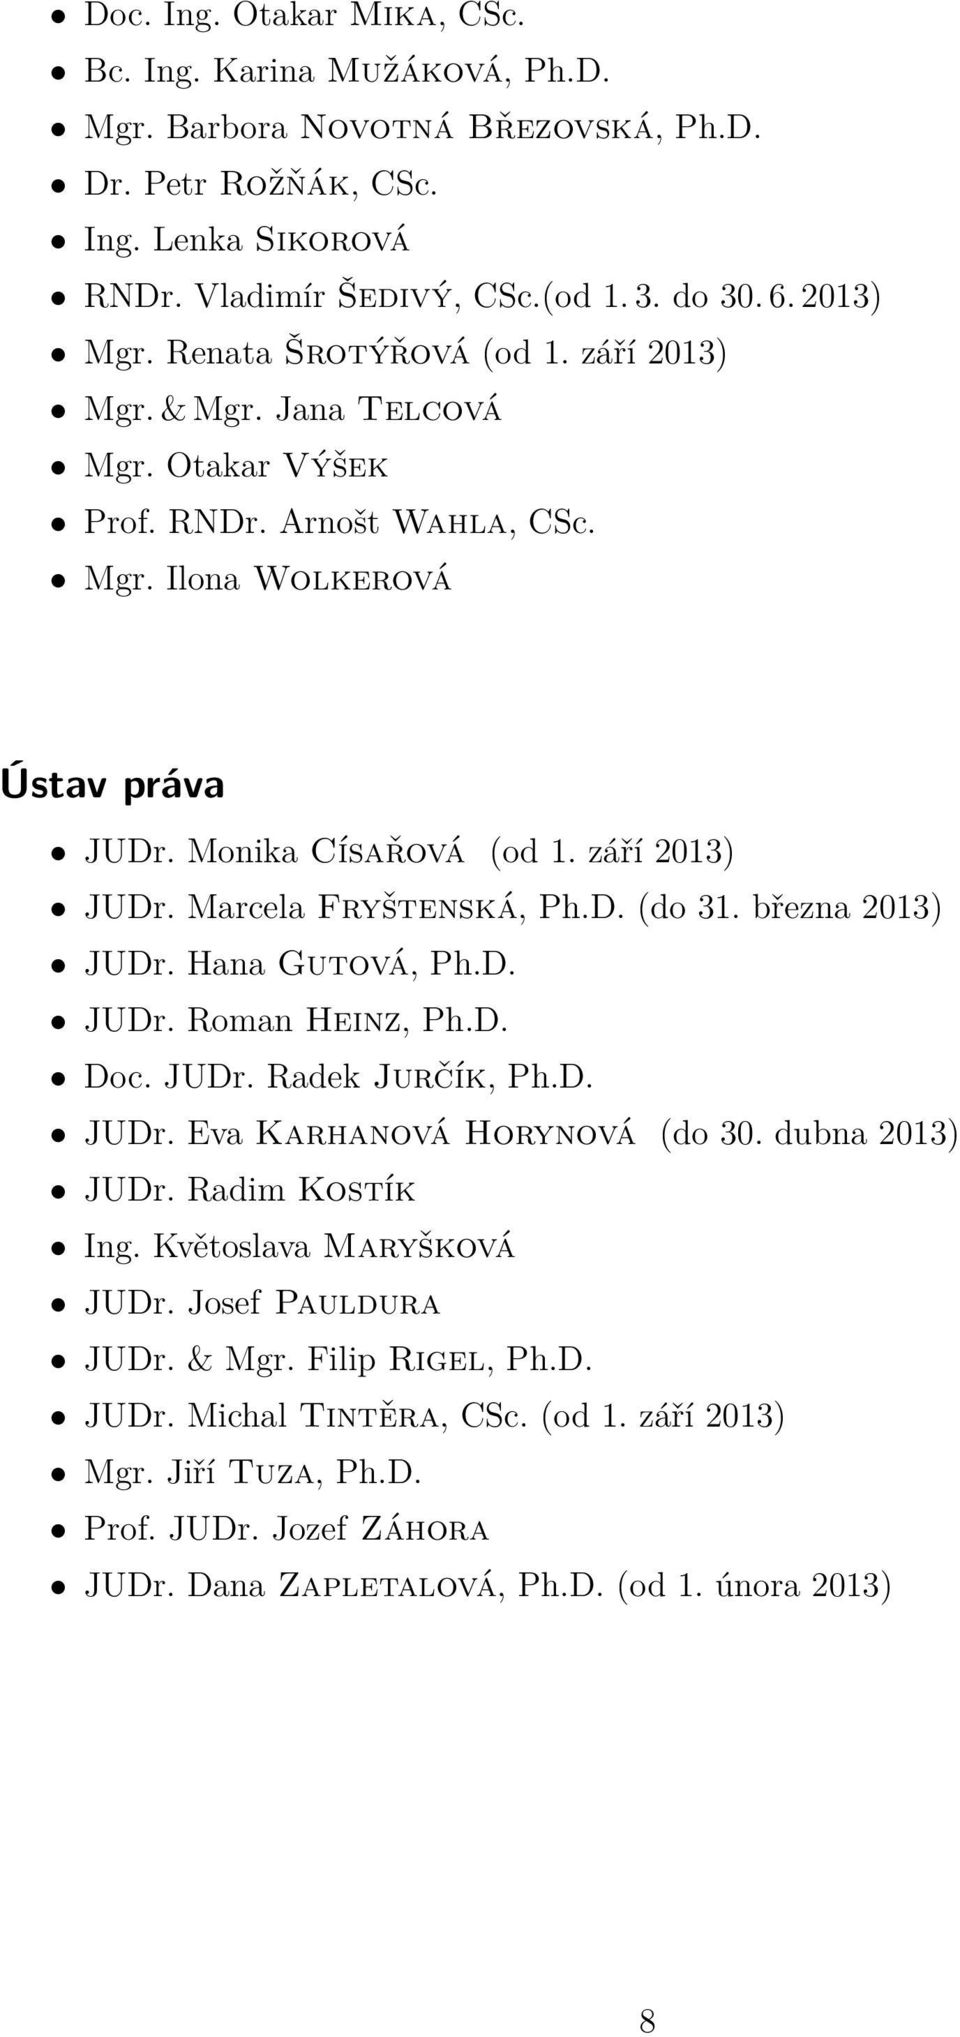 Marcela Fryštenská, Ph.D. (do 31. března 2013) JUDr. Hana Gutová, Ph.D. JUDr. Roman Heinz, Ph.D. Doc. JUDr. Radek Jurčík, Ph.D. JUDr. Eva Karhanová Horynová (do 30. dubna 2013) JUDr. Radim Kostík Ing.